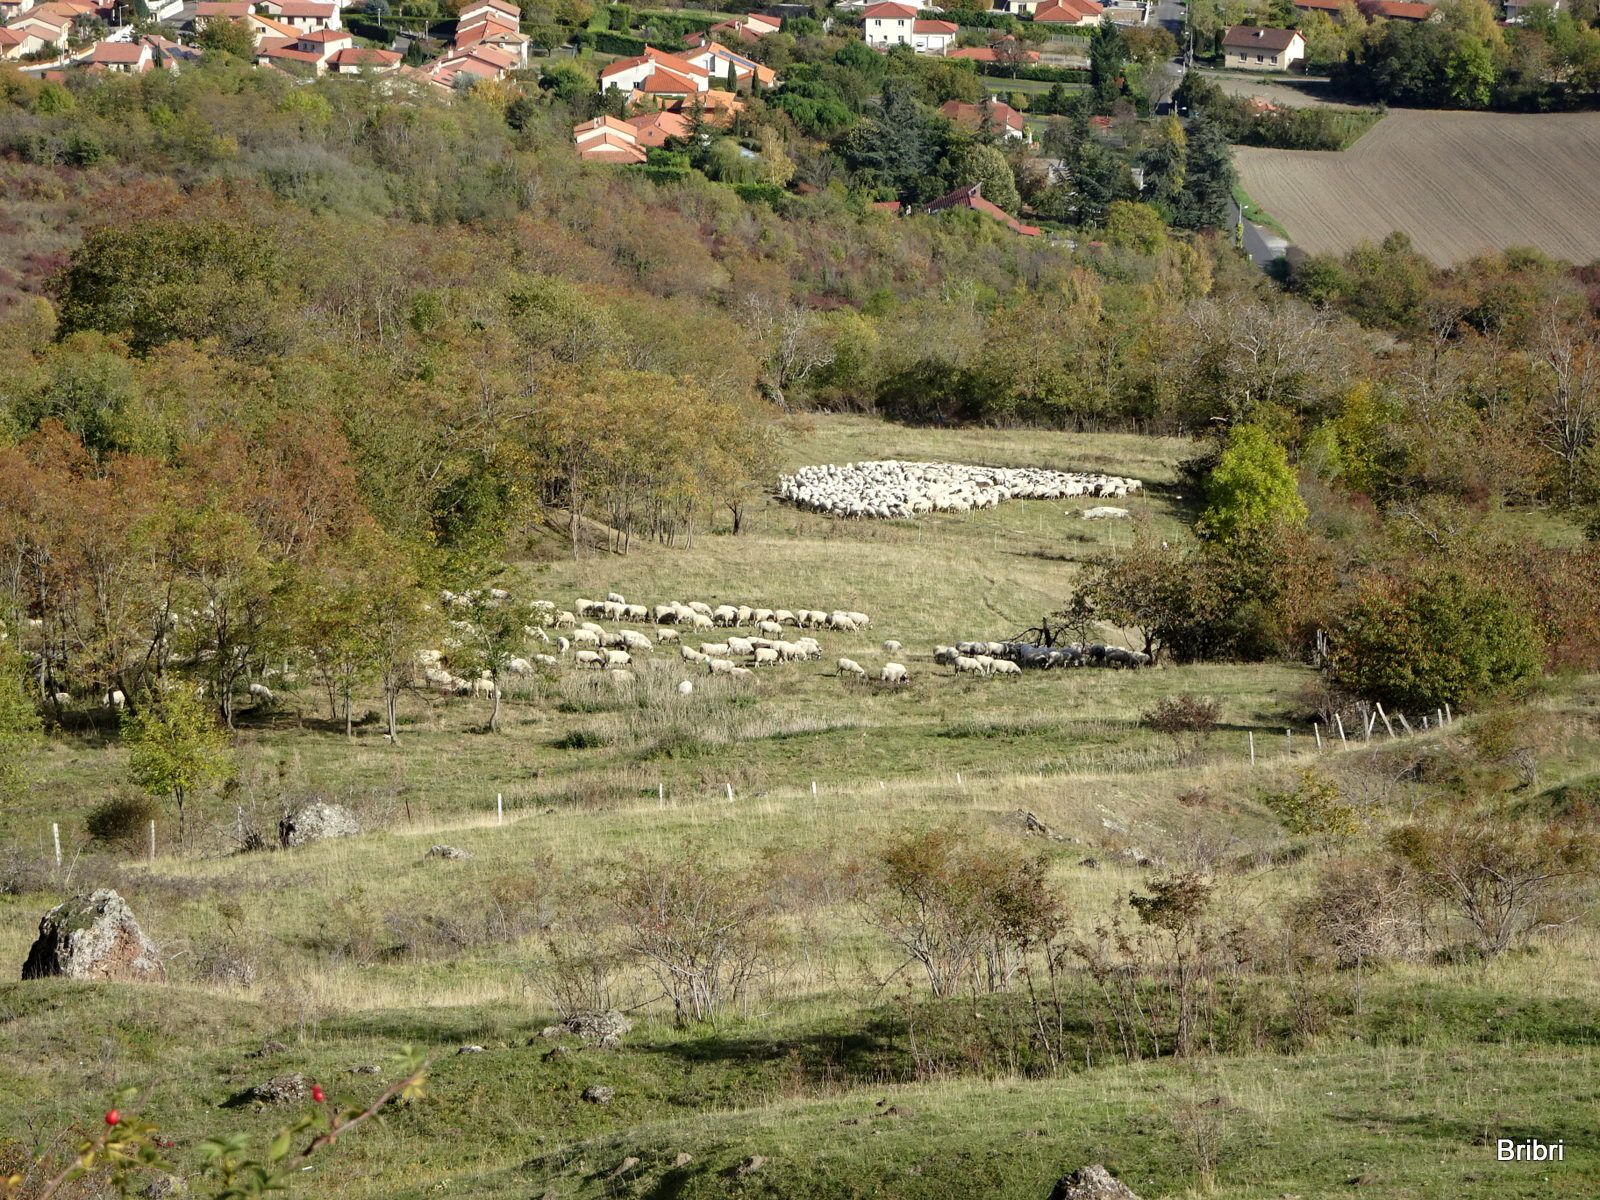 Les moutons nettoient les pentes du plateau, on a longtemps marché sur les crottes de ces ruminants très utiles.